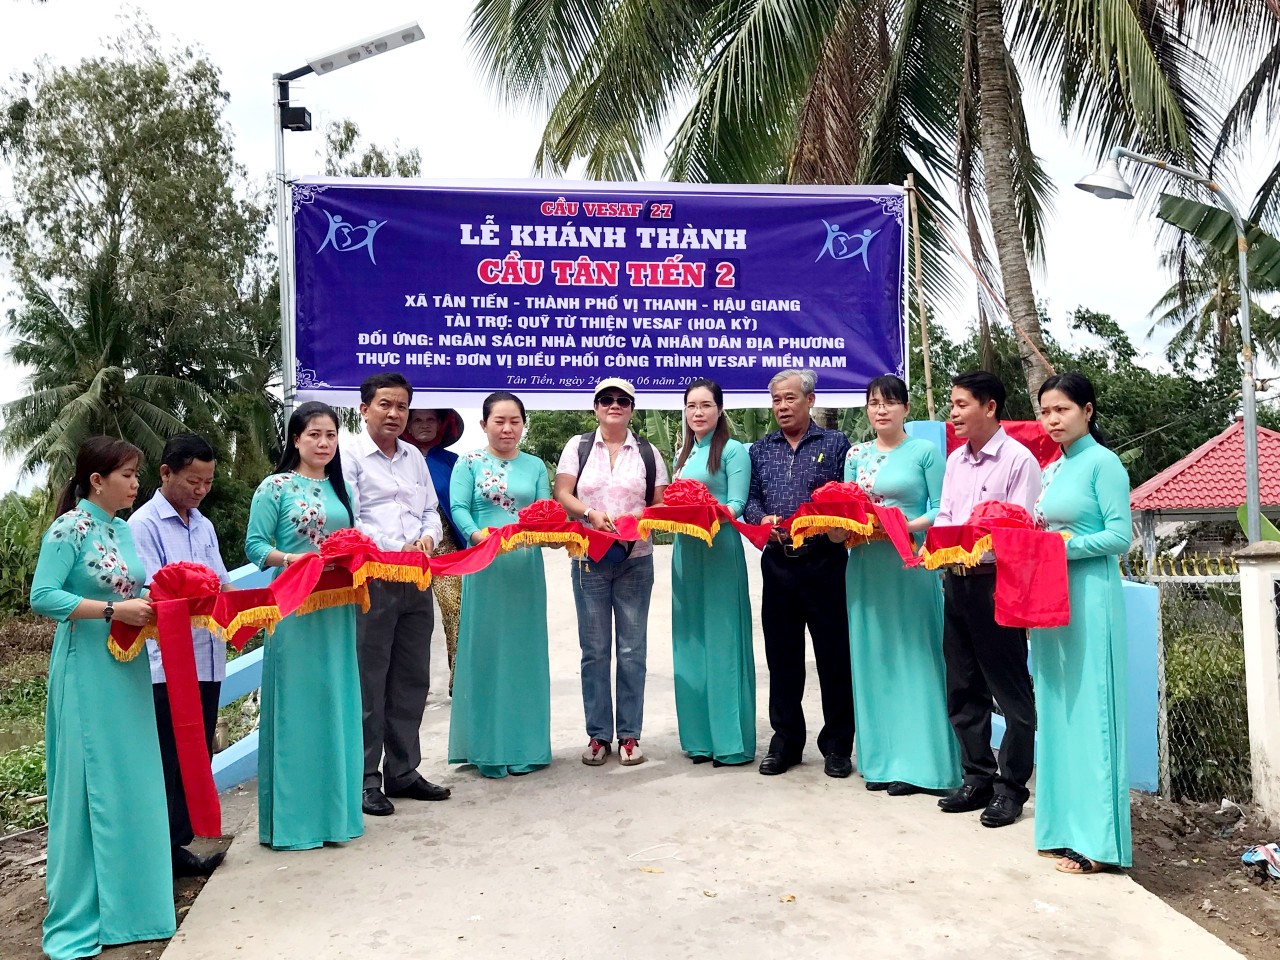 Ông Nguyễn Văn Nhân - Chủ tịch Liên hiệp Hậu Giang  (thứ 4, từ trái sang) thực hiện nghi thức khánh thành cầu Tân Tiến 2 cùng lãnh đạo địa phương và nhà tài trợ.